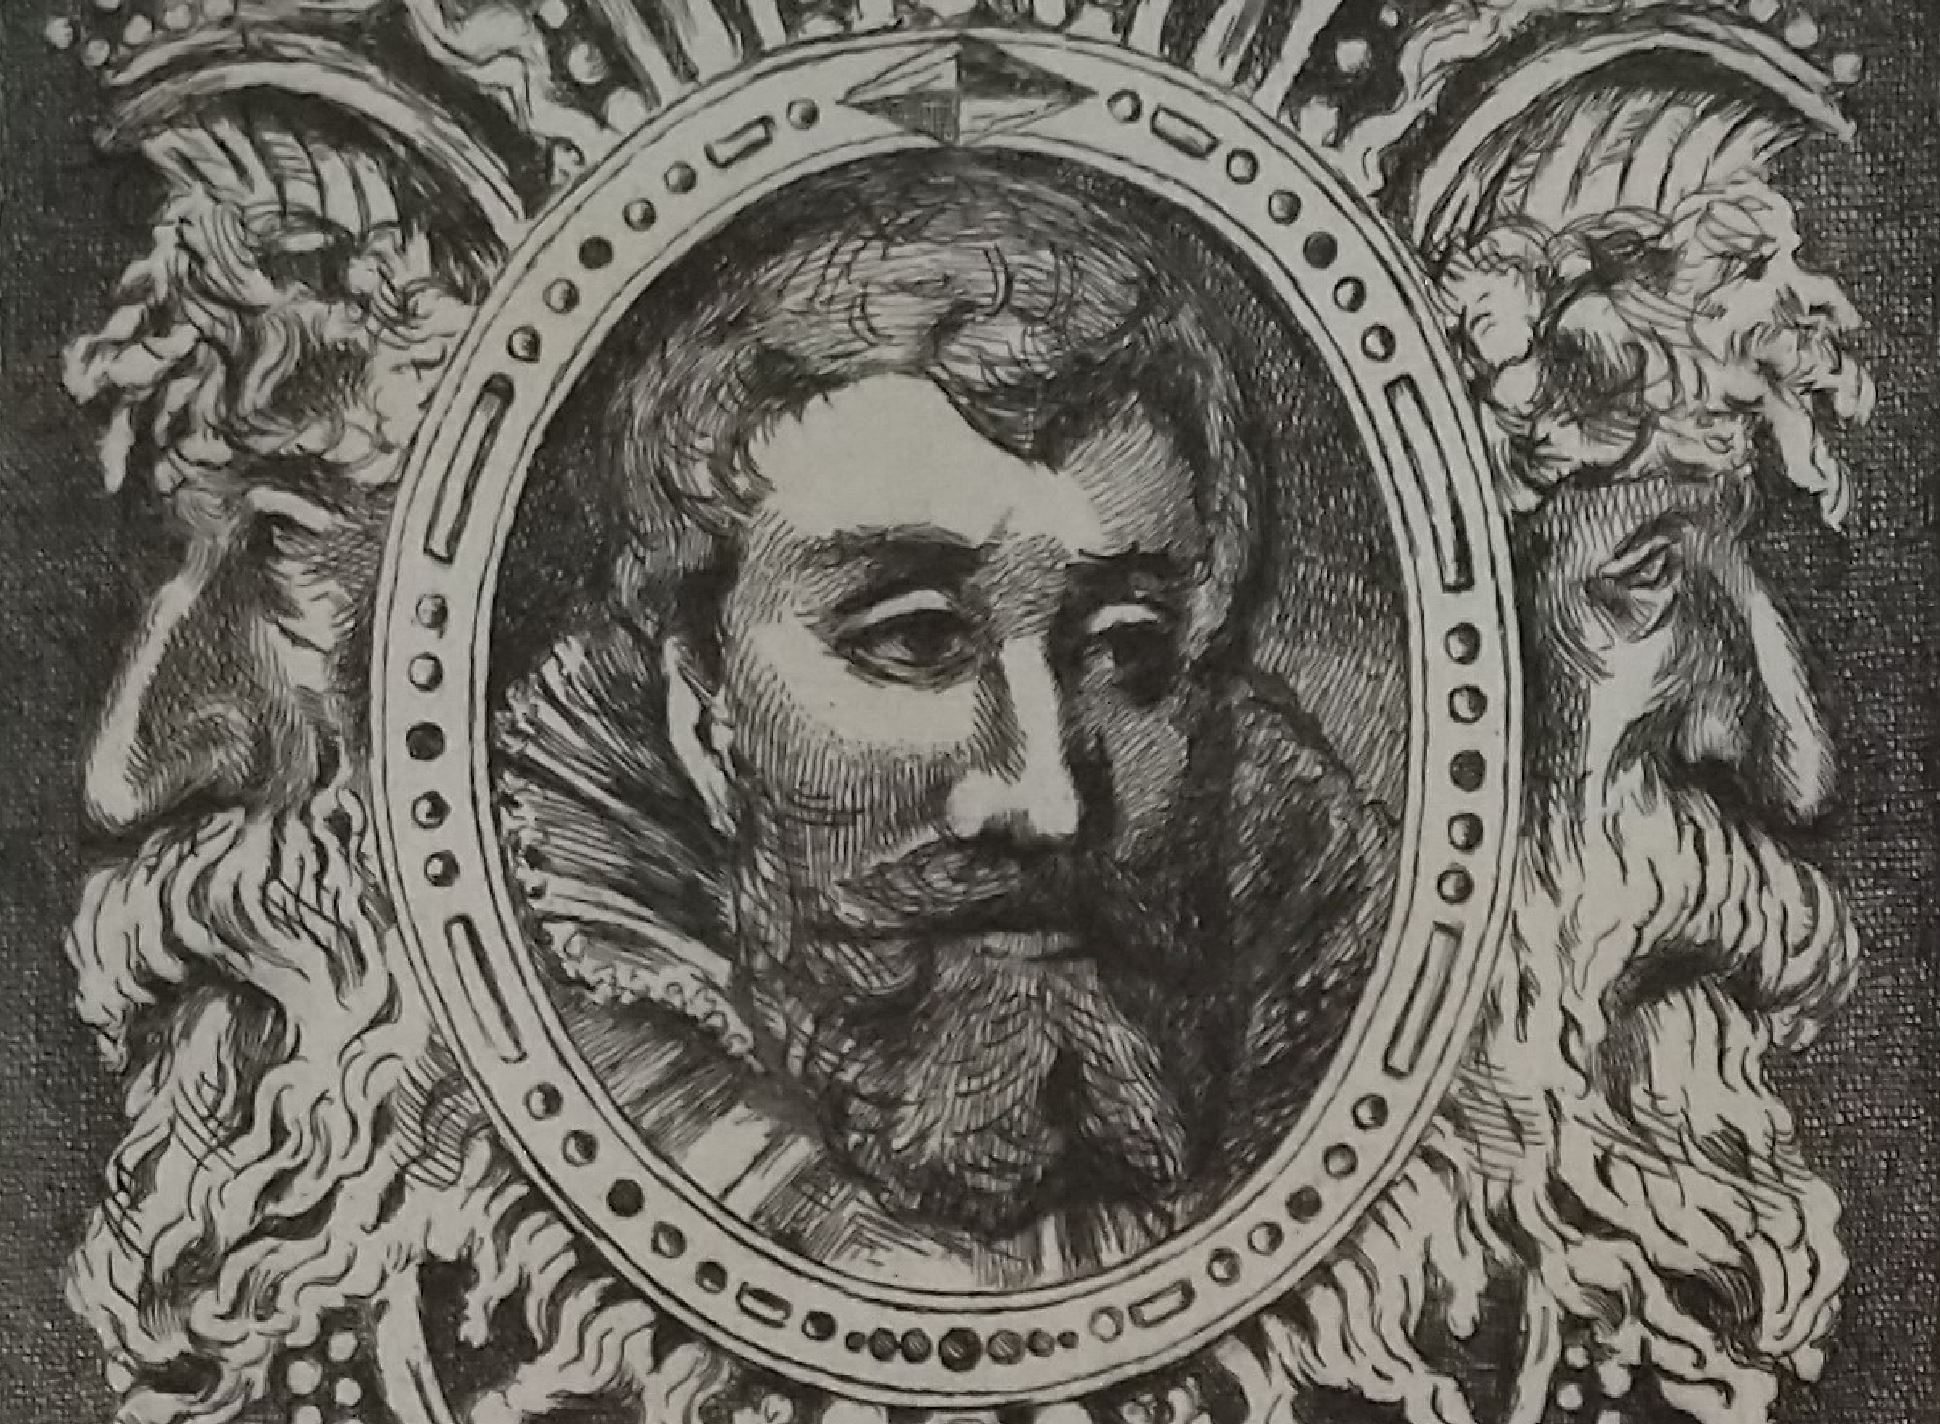 Leopold Armand Hugo BNF Chevalier aux lions detail